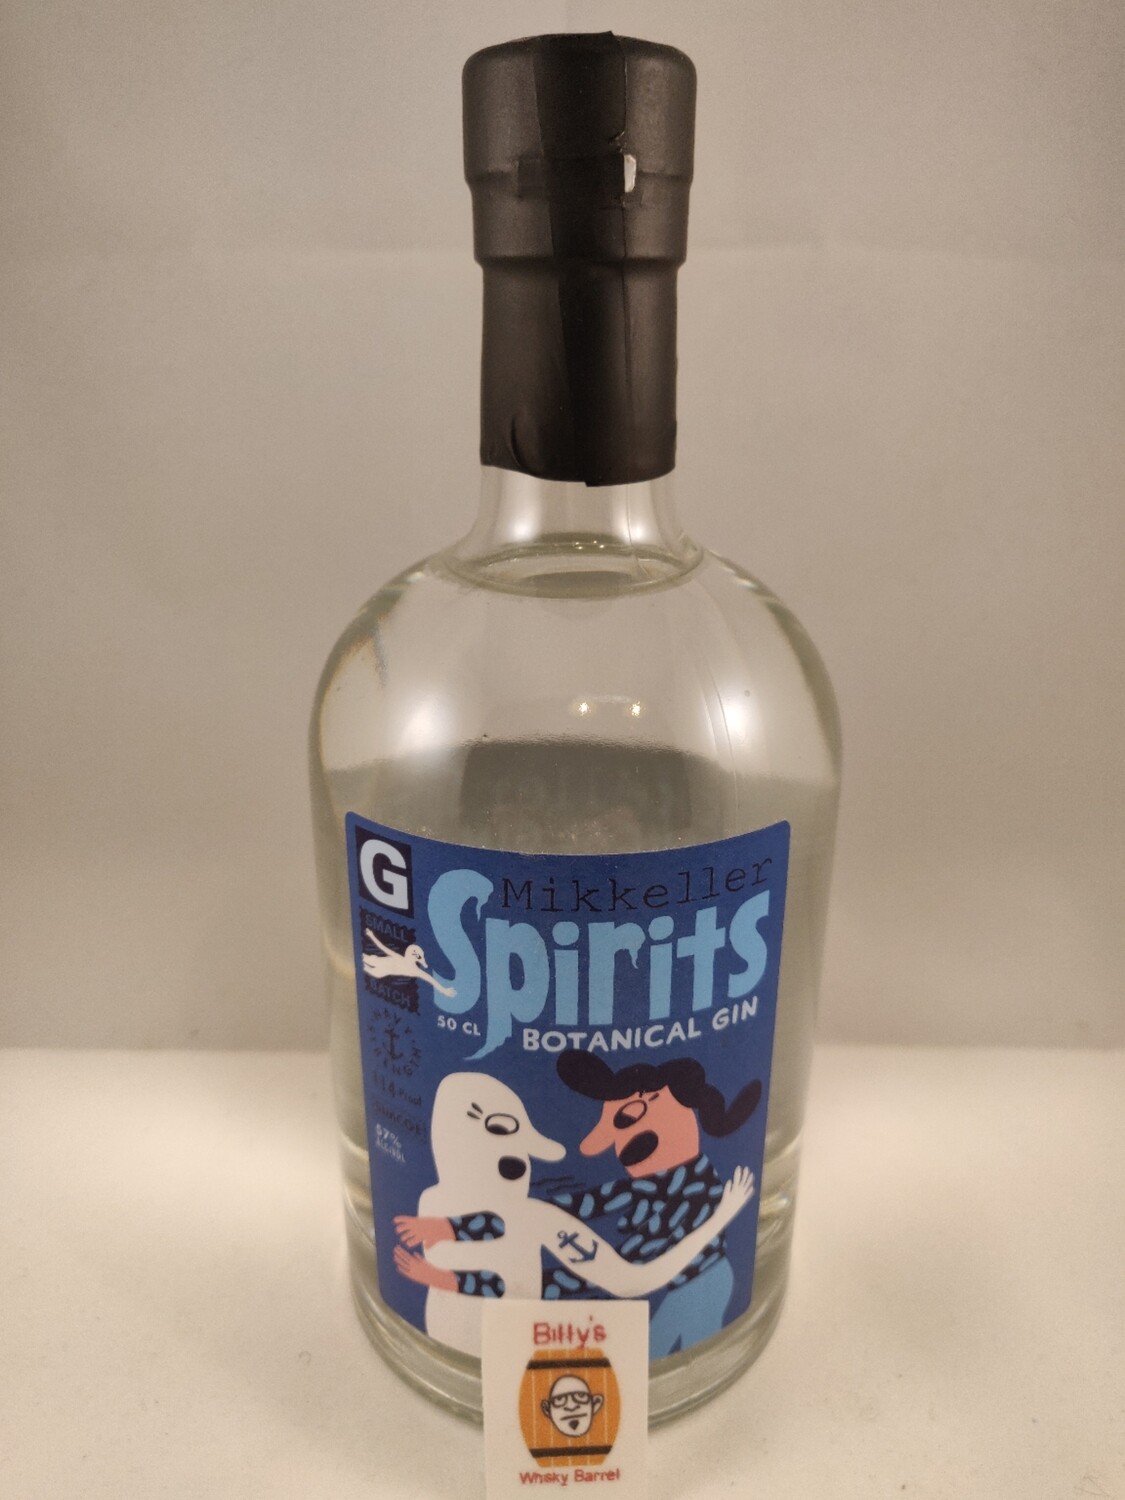 Mikkeller Spirits Botanical Gin - Navy Strength